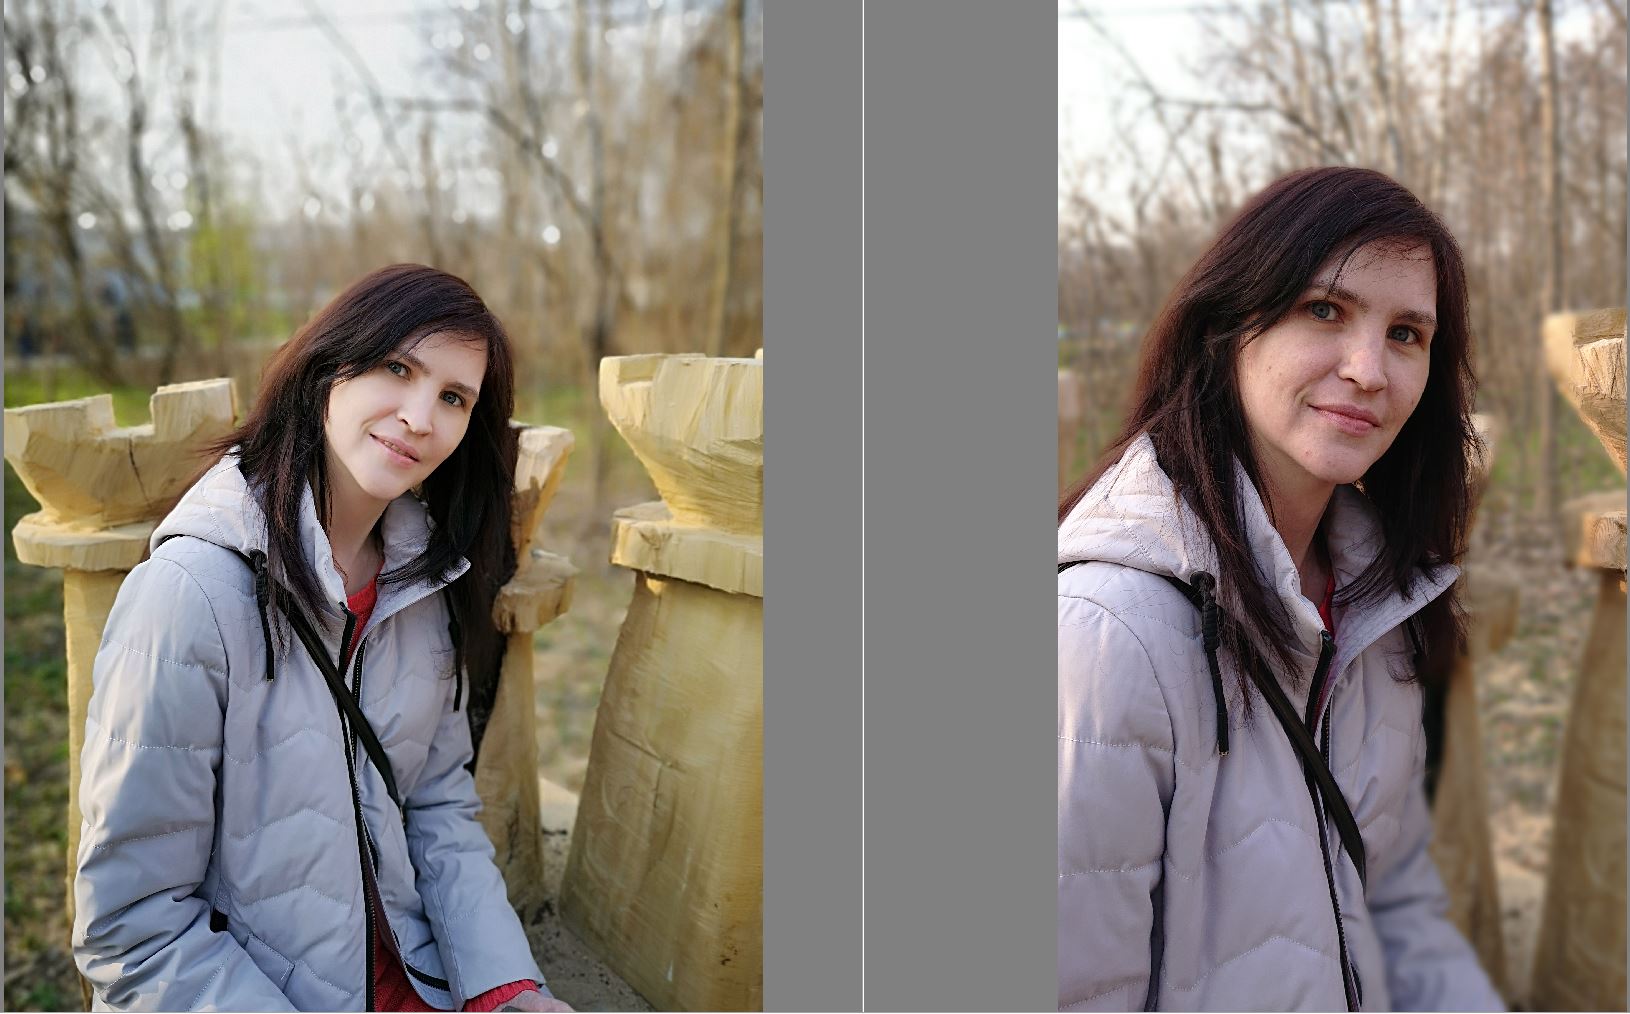 Сравнение качества фотографий, сделанных на телефоны с различной конфигурацией сенсоров - 41